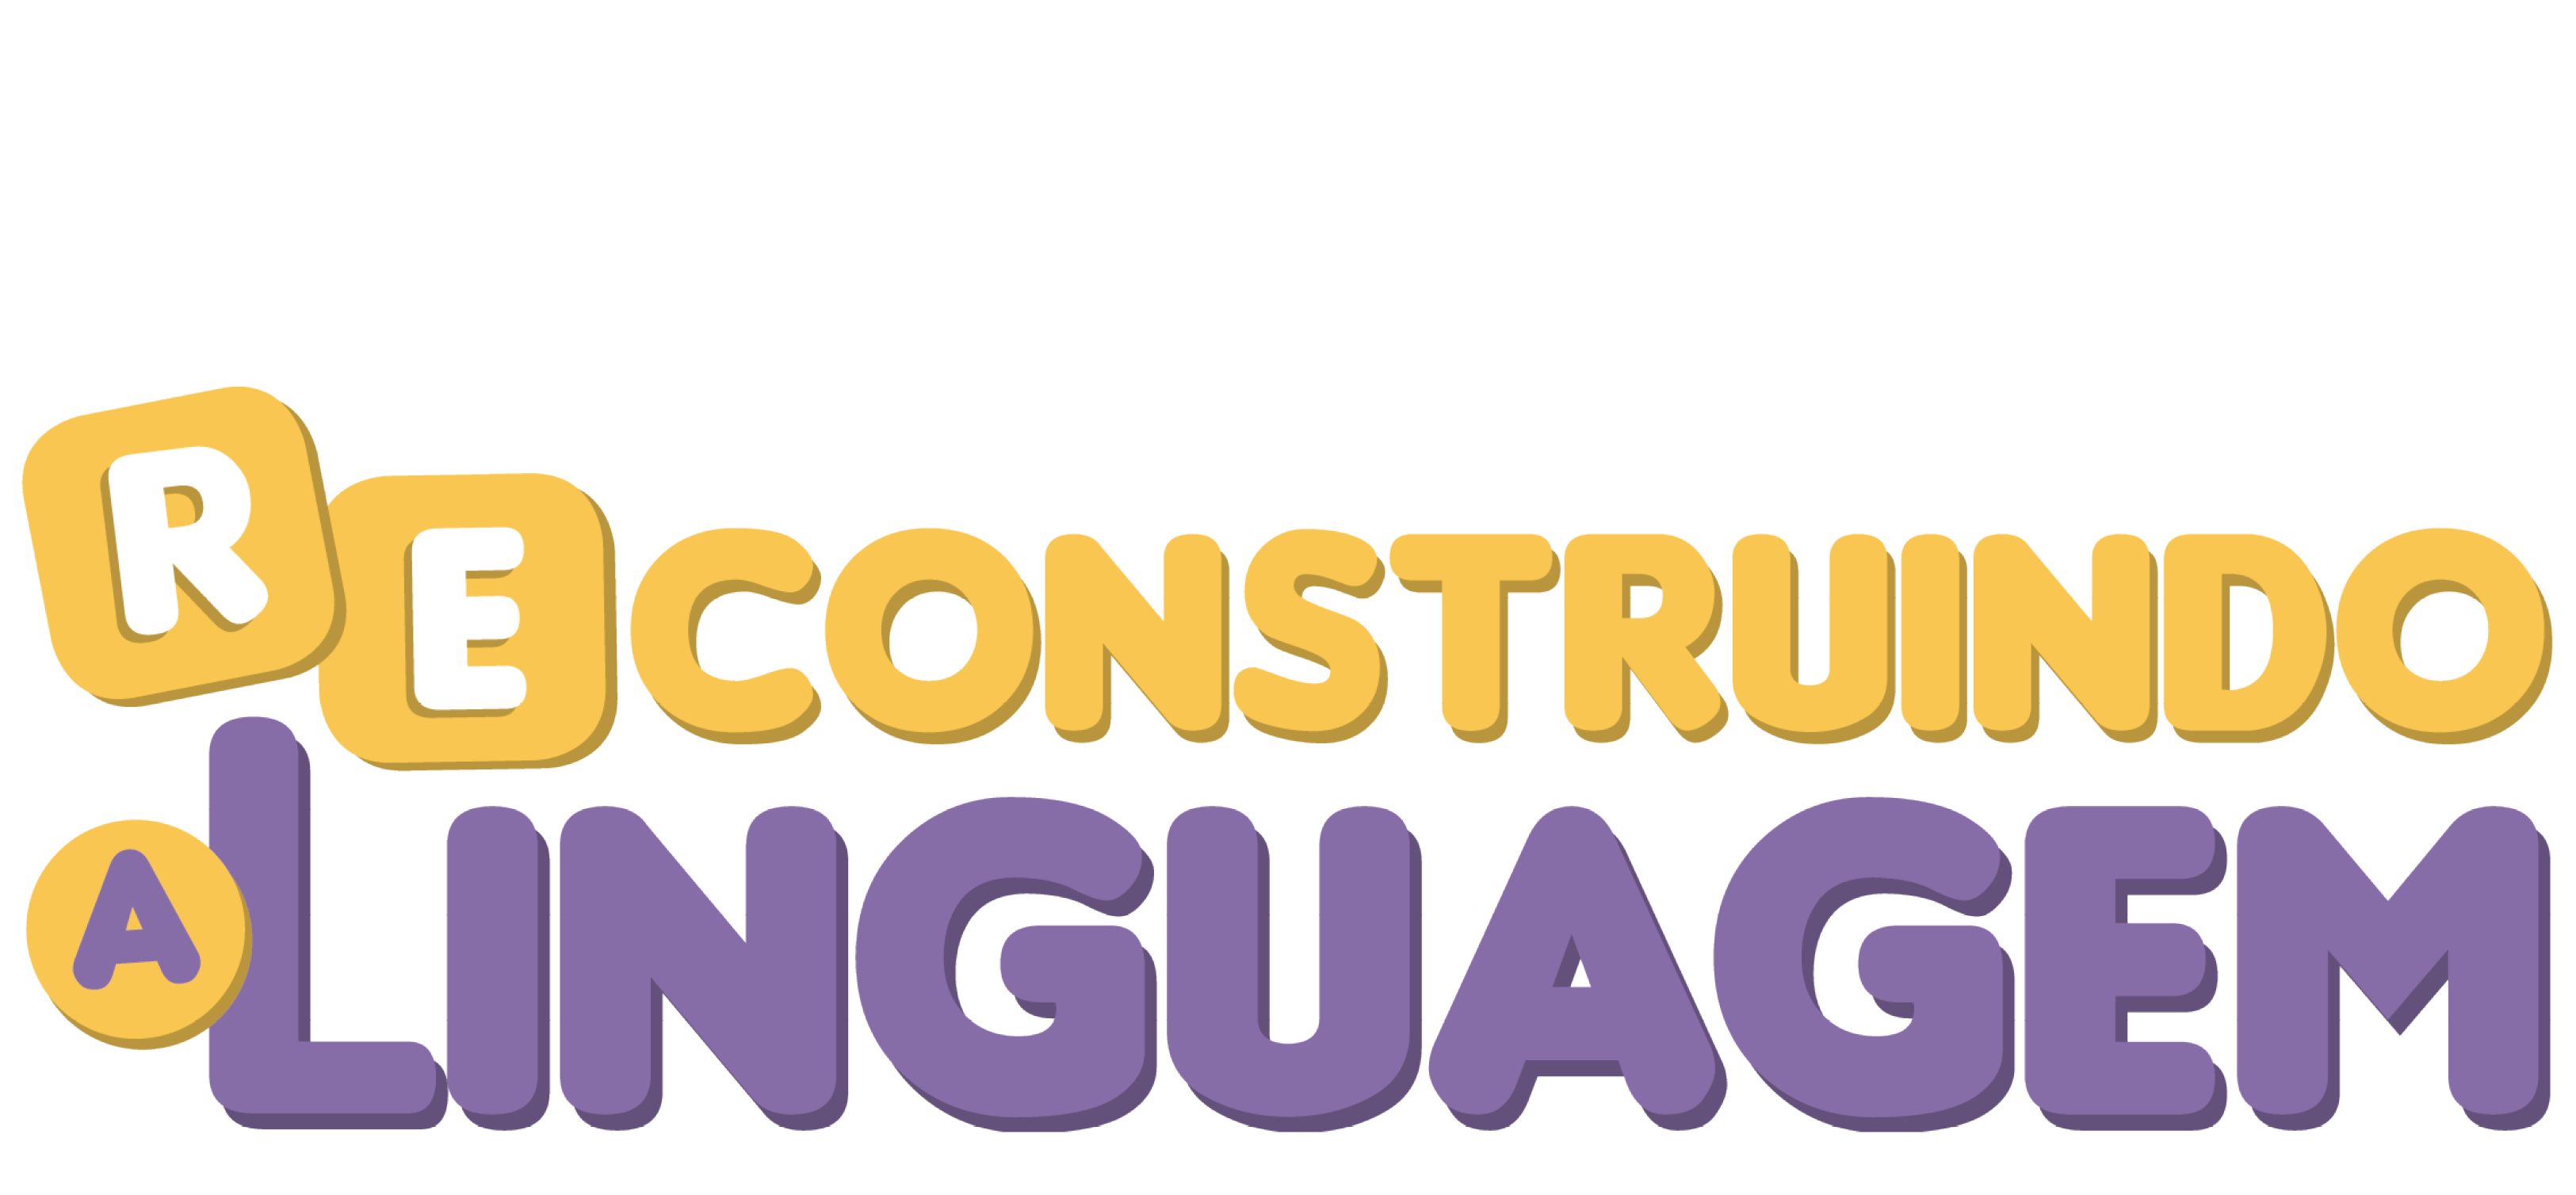 Kit Reconstruindo a Linguagem